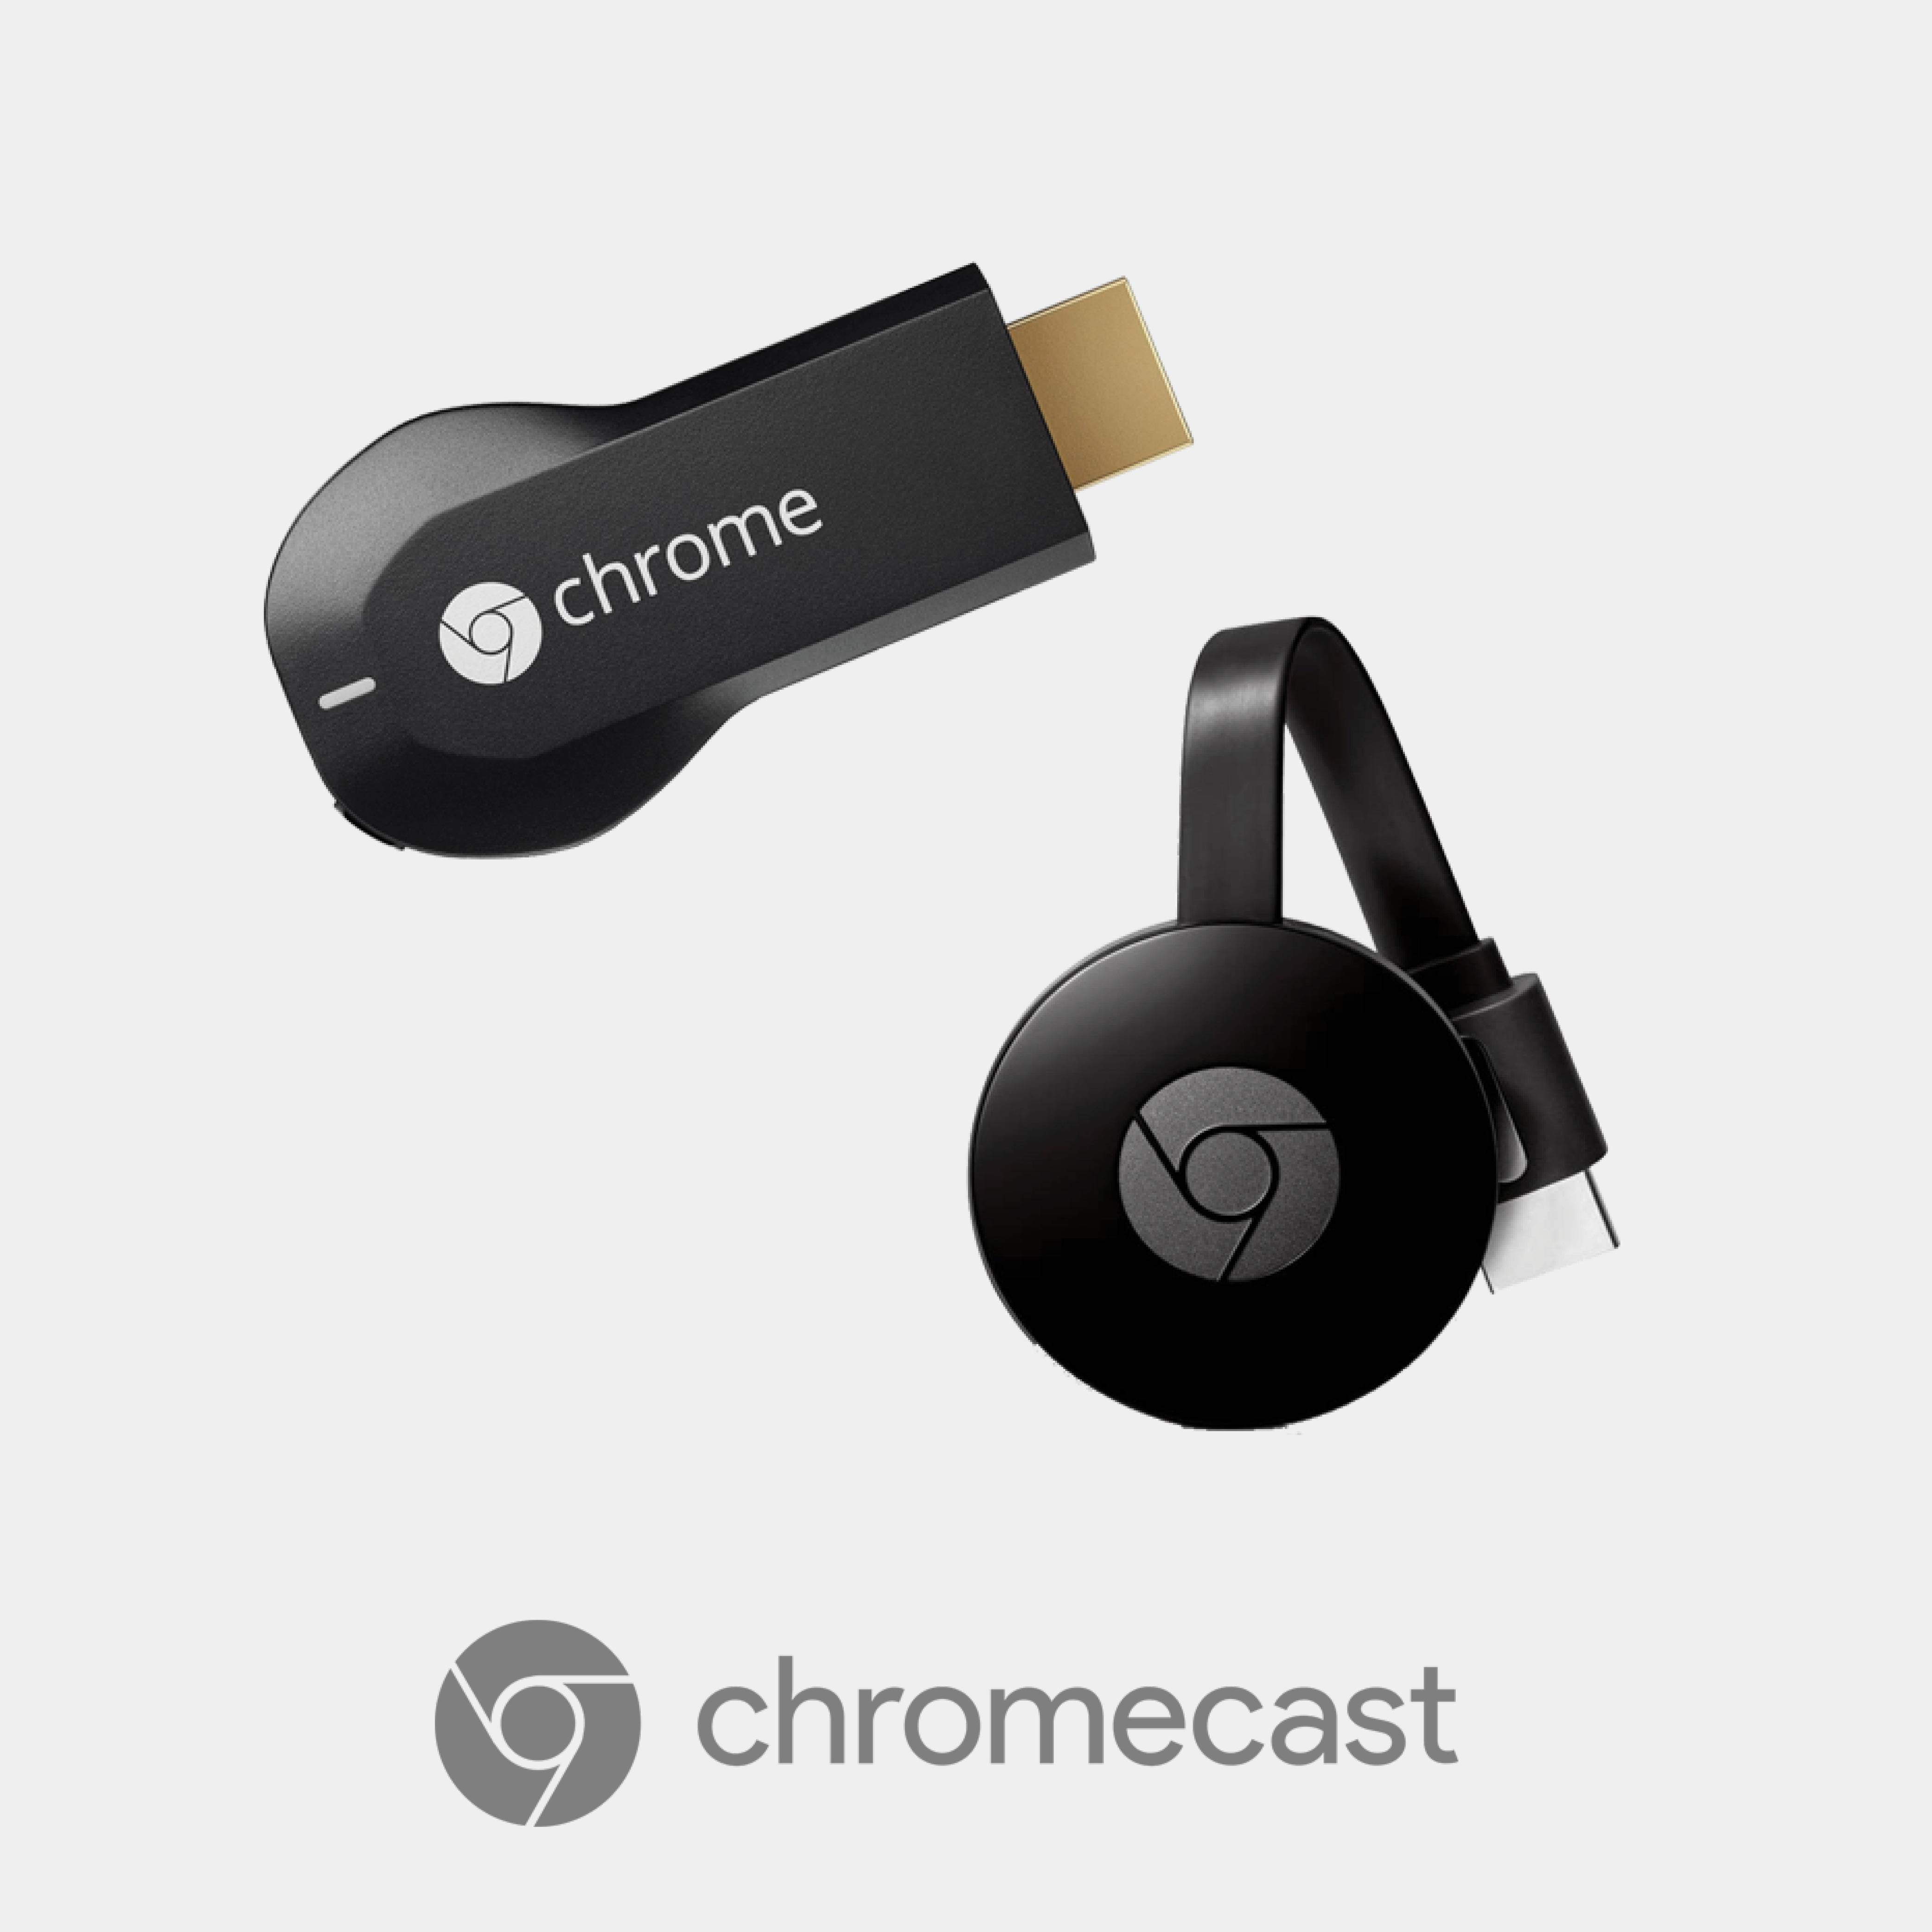 Stream using Google Chromecast